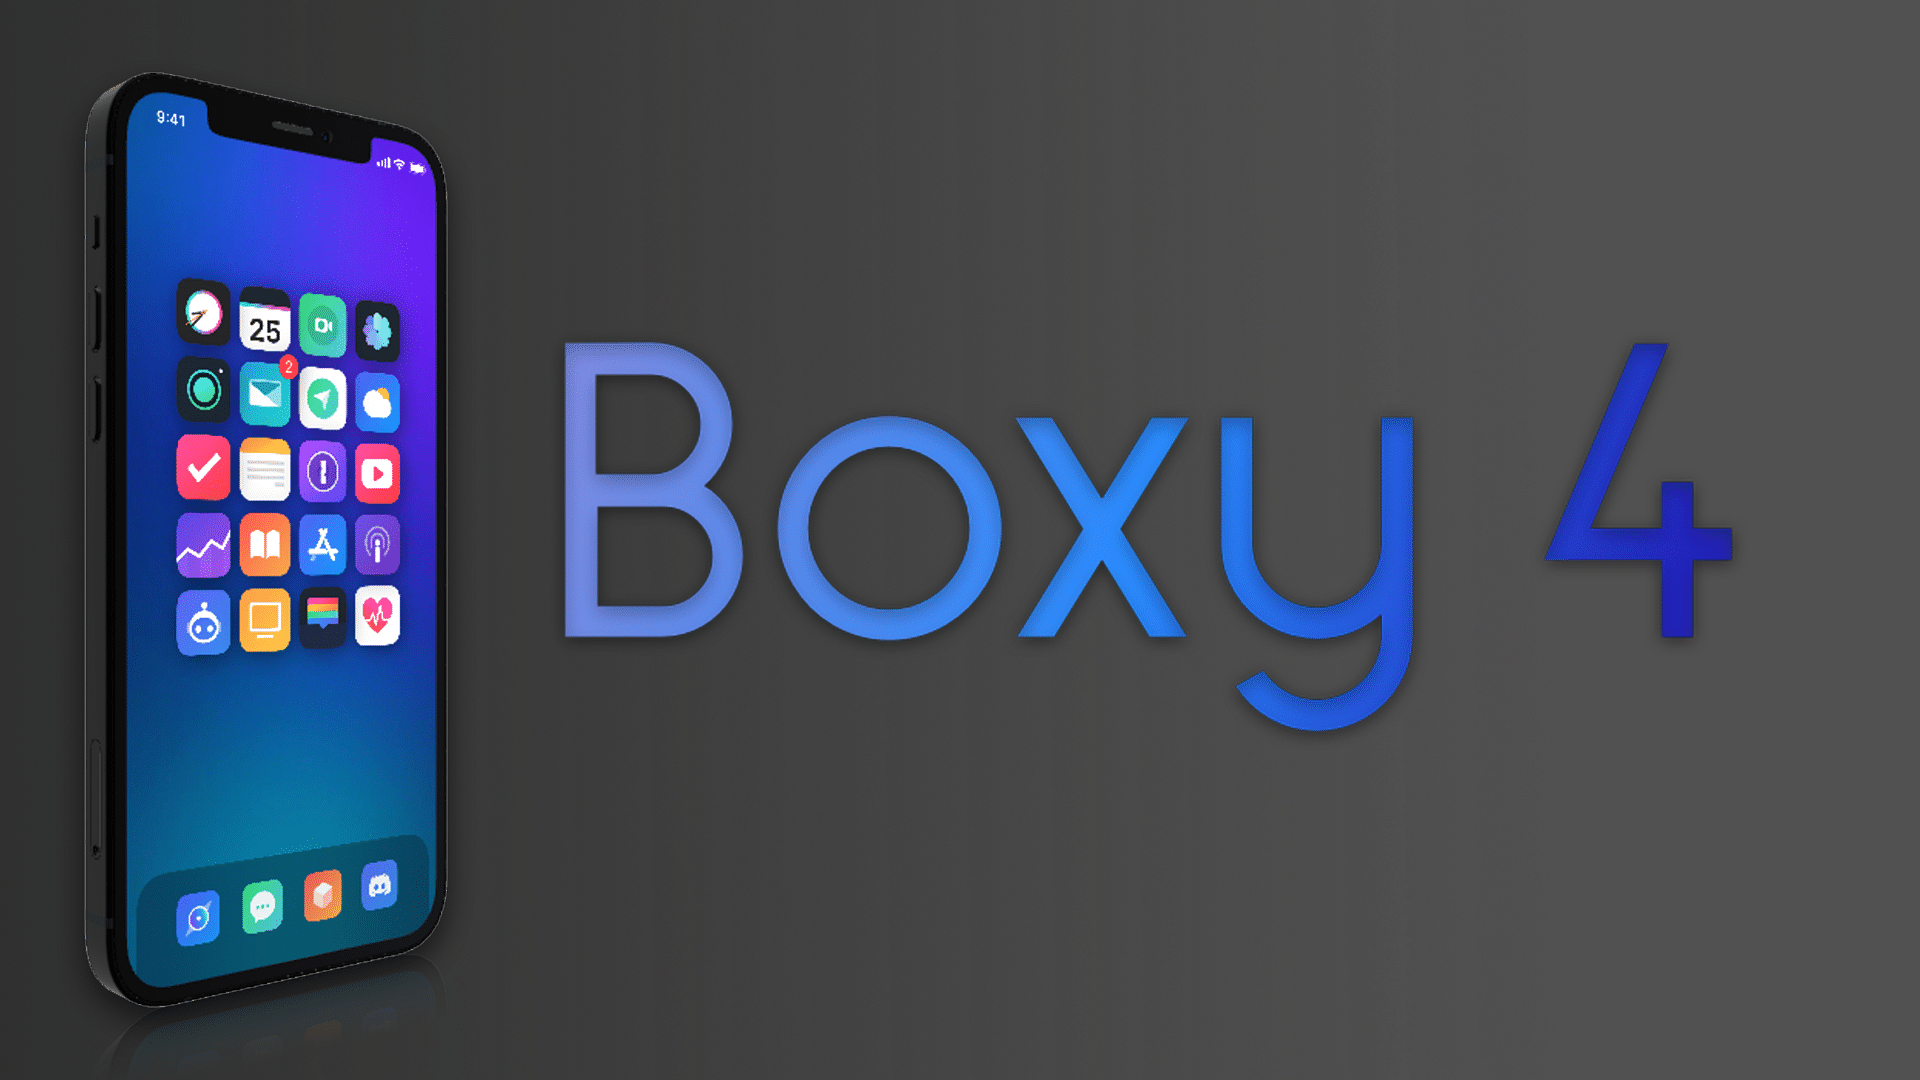 Boxy 4 (iOS 13 - 14)